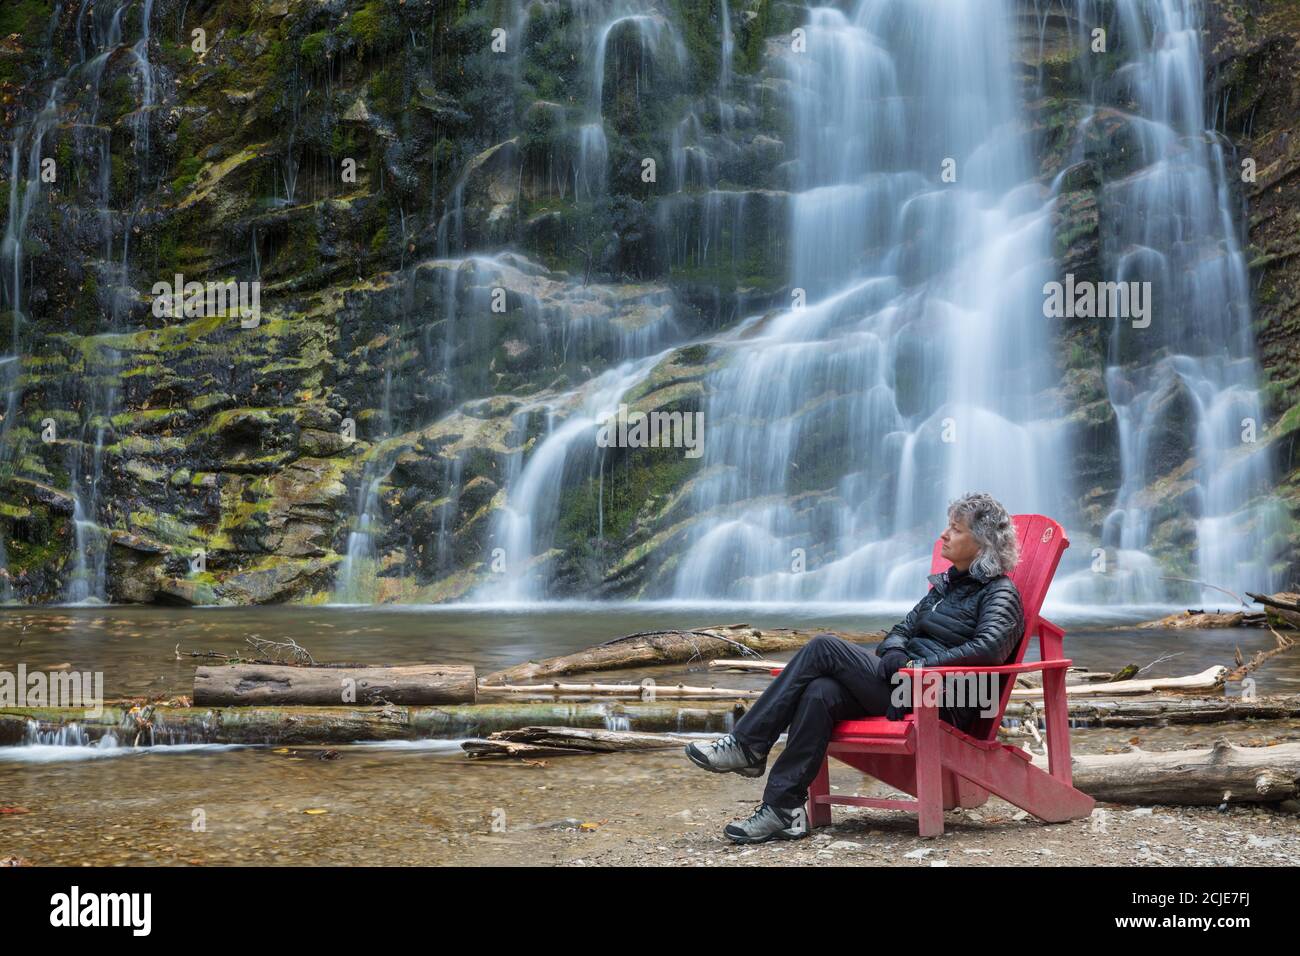 Femme à la chaise rouge de la chute, parc national Forillon, Gaspésie, Québec, Canada Banque D'Images